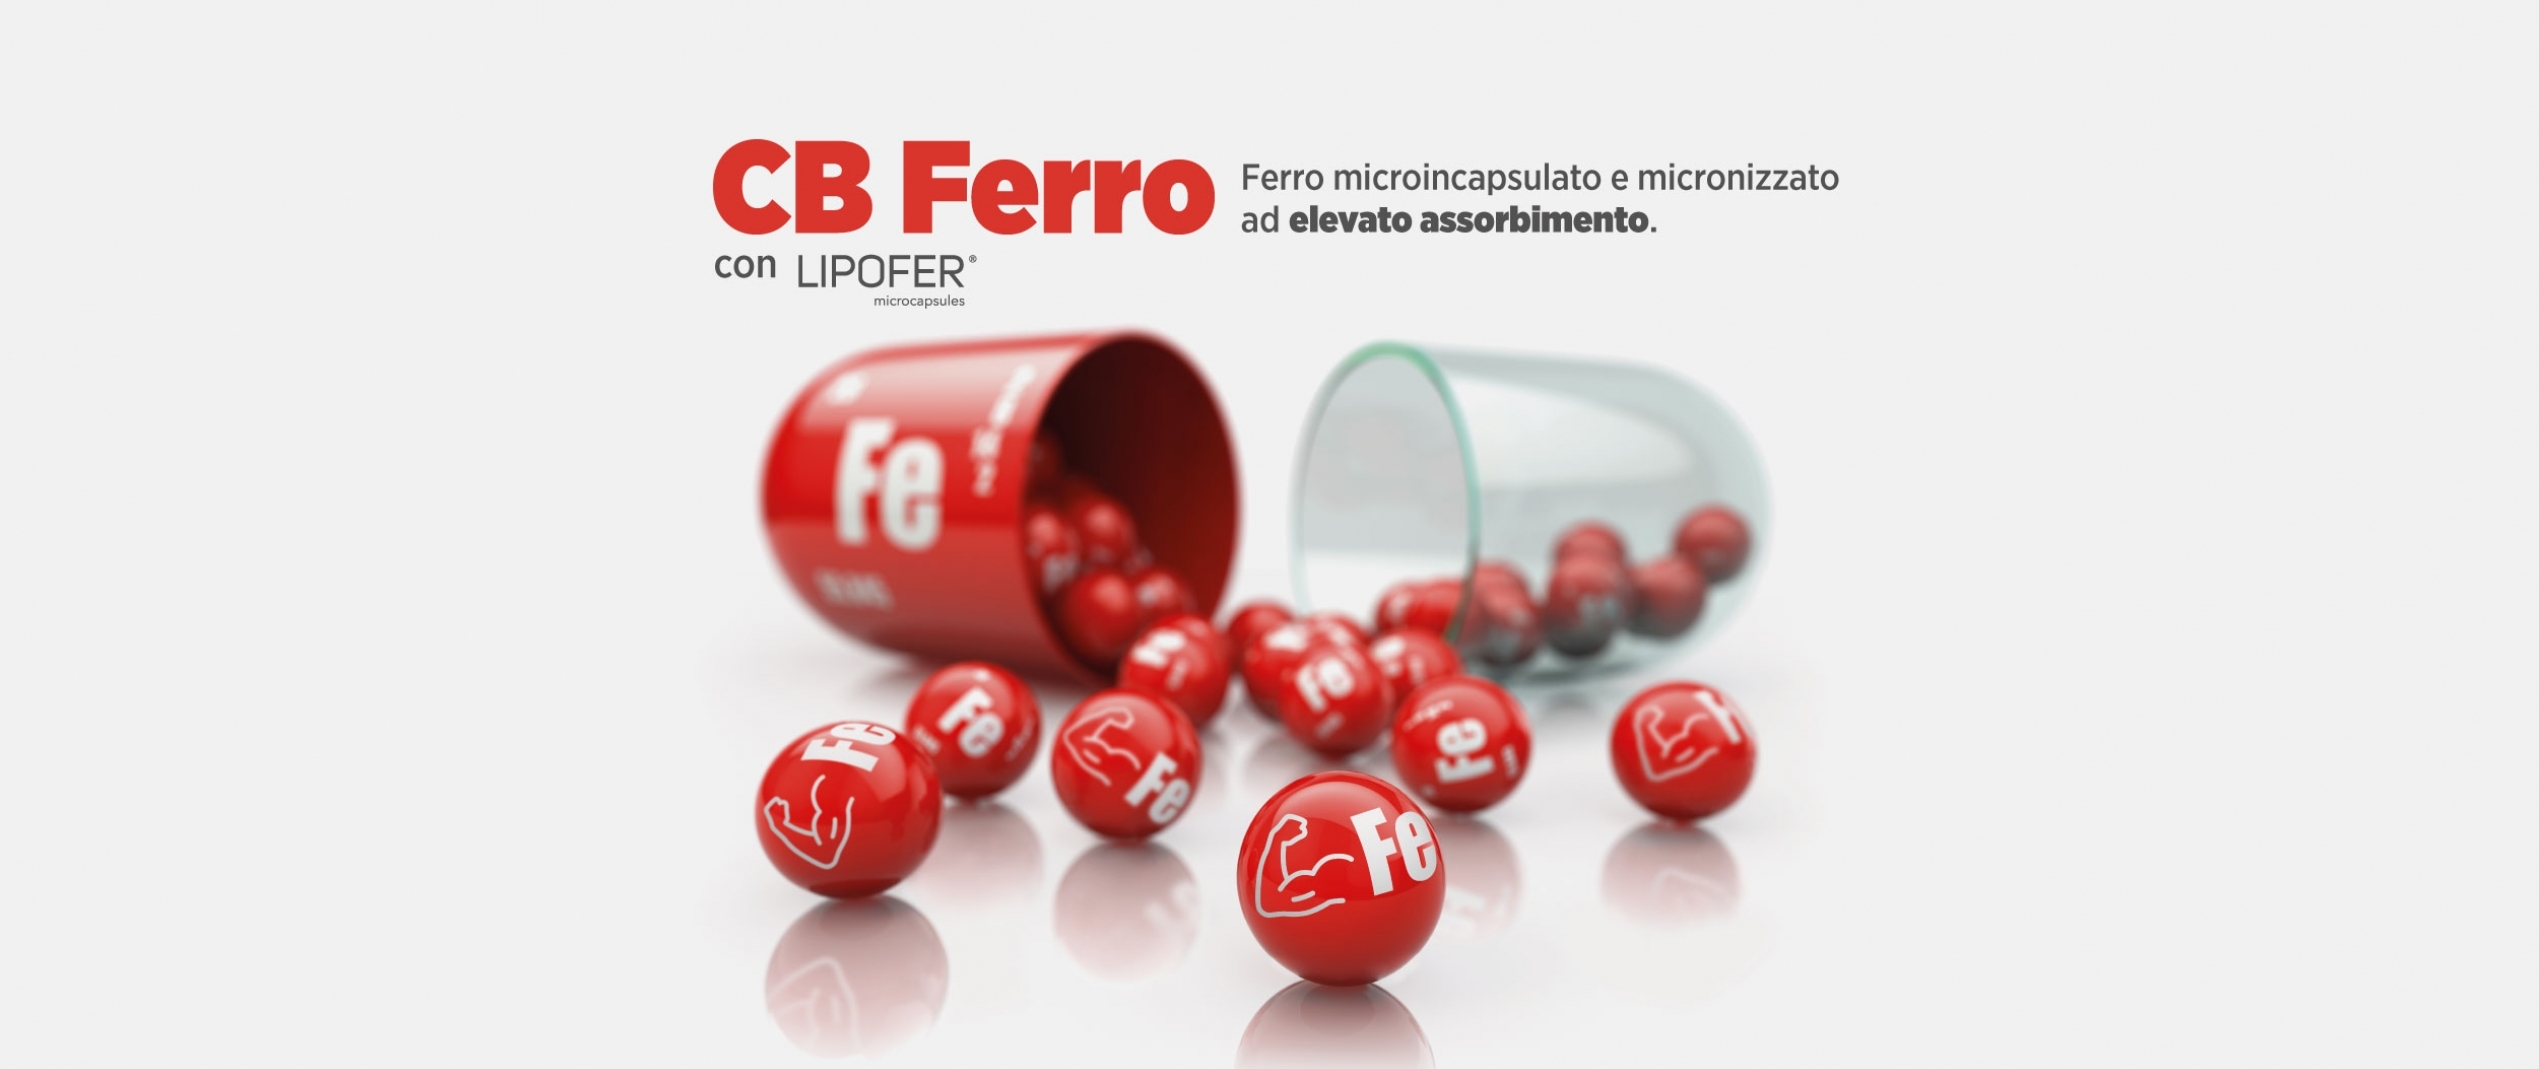 CB Ferro